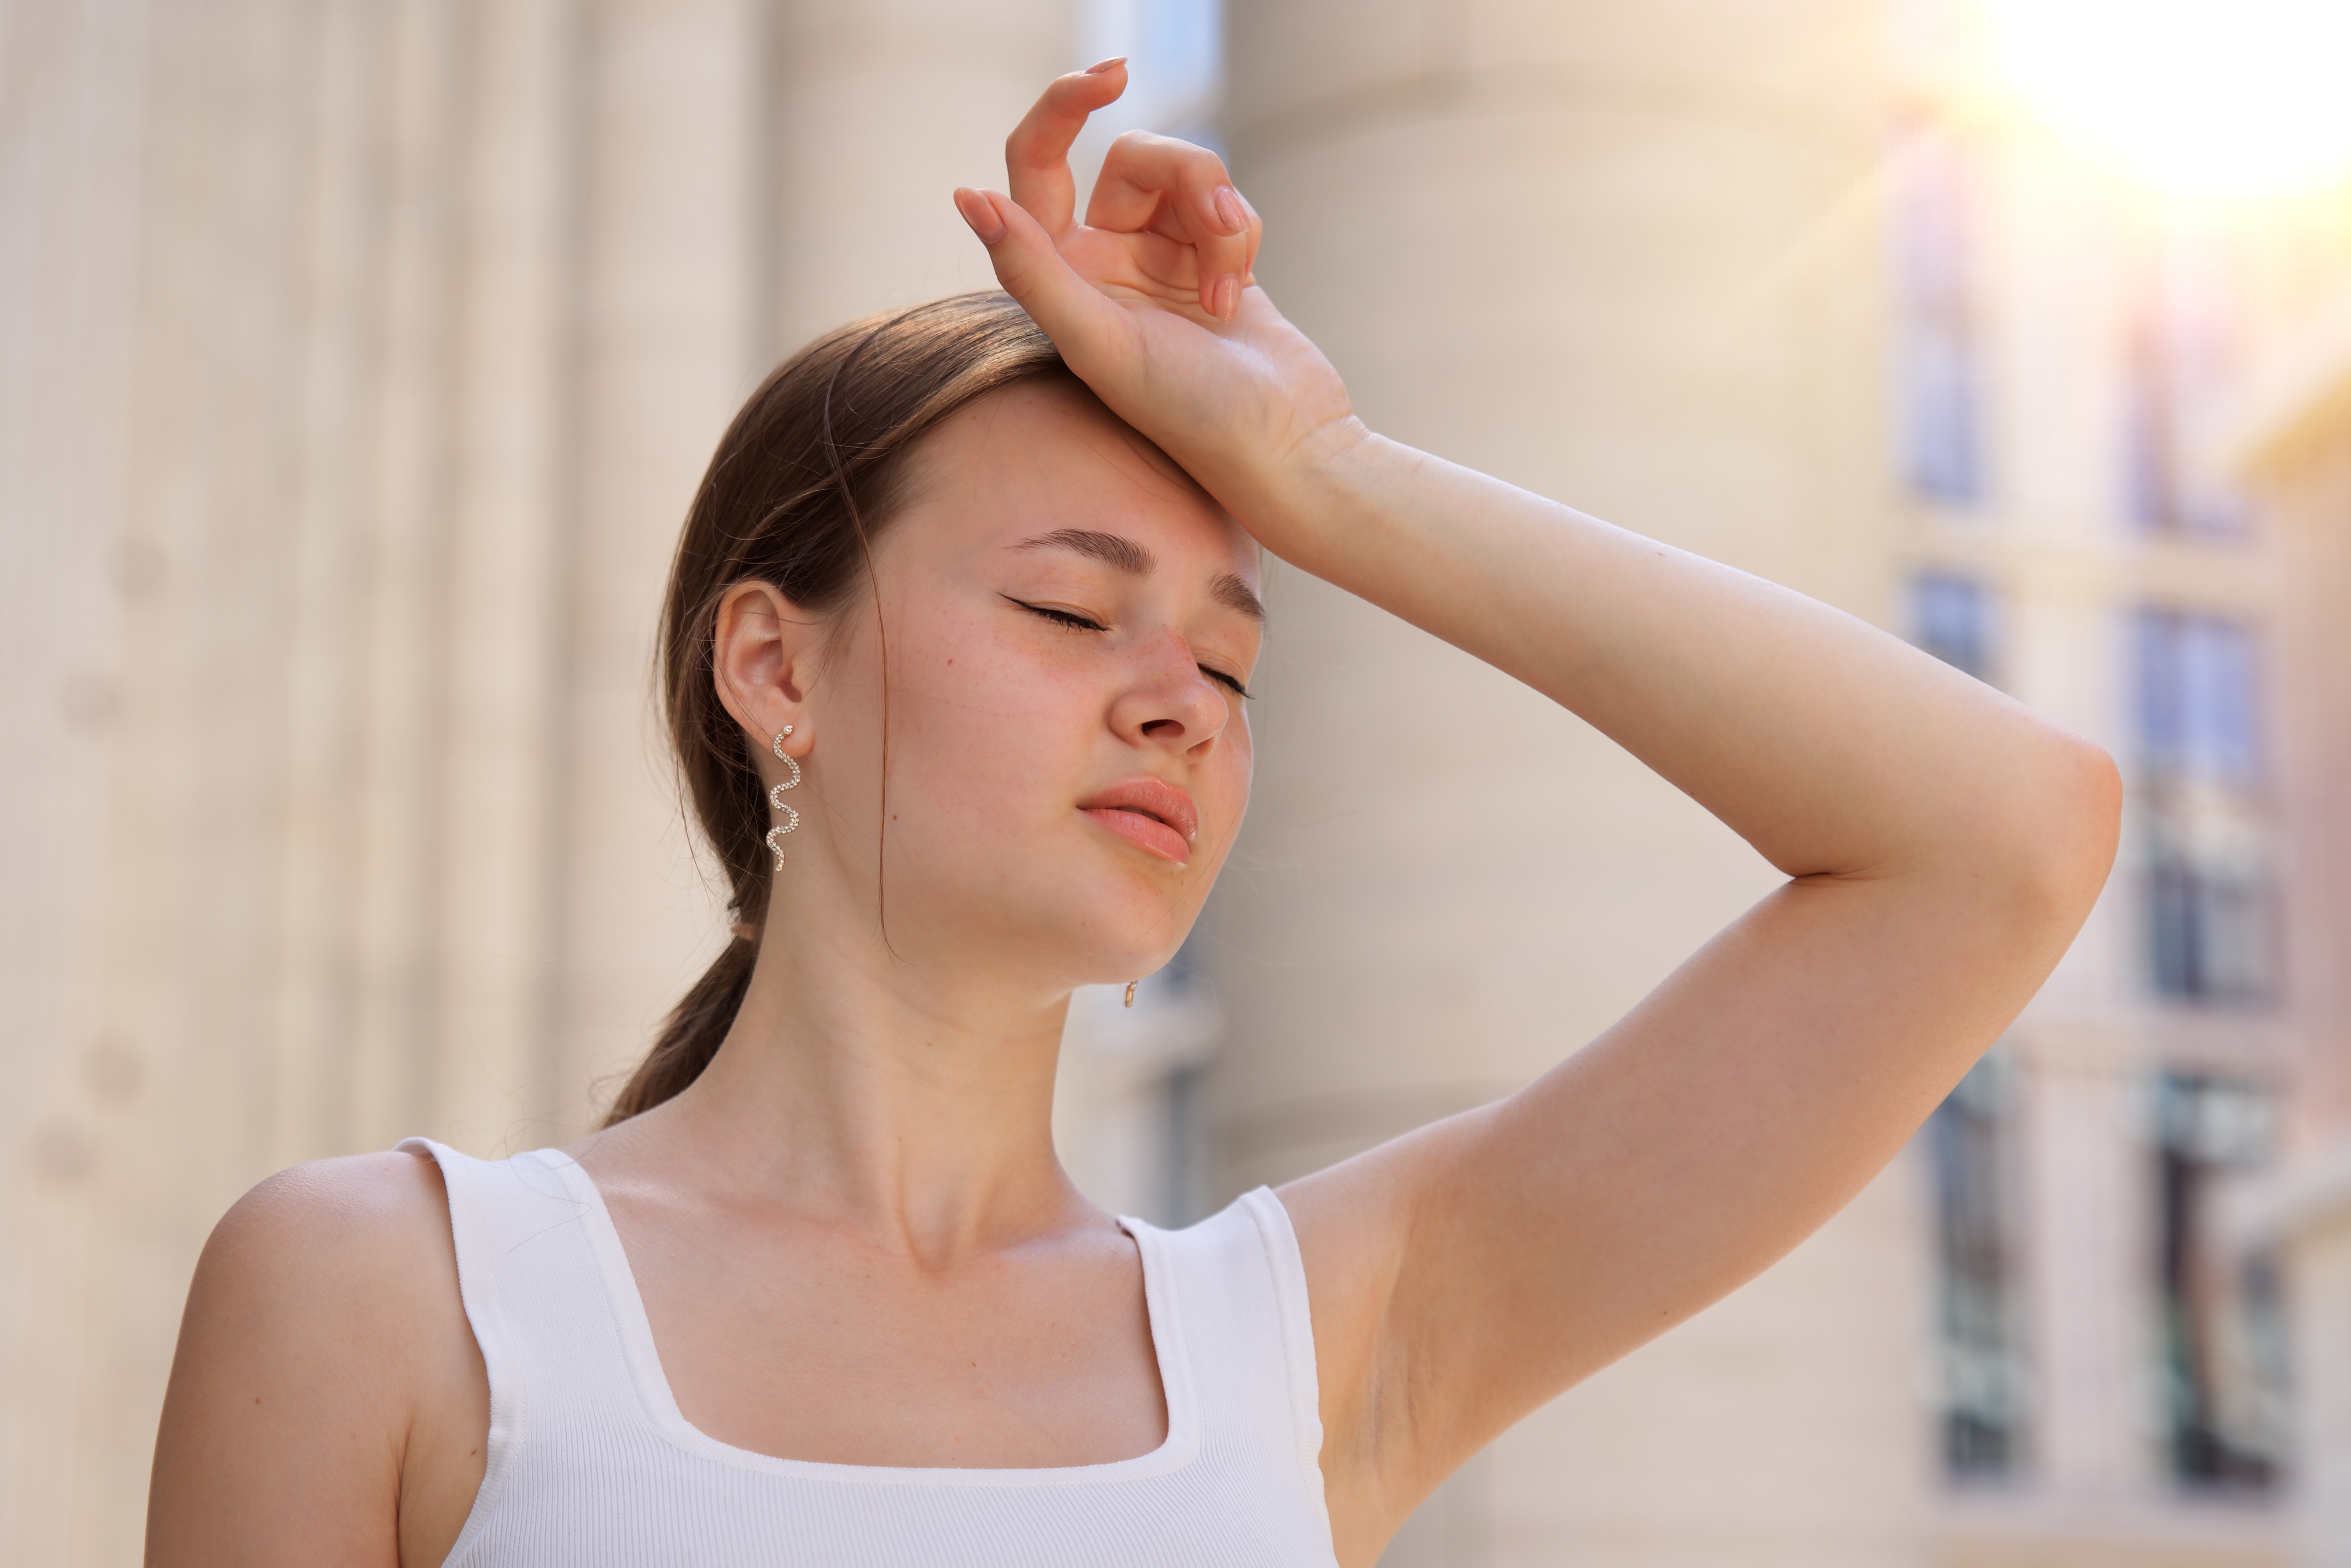 Une jeune fille posant sa main sur sa tête ayant l'air étourdie | Source : Shutterstock